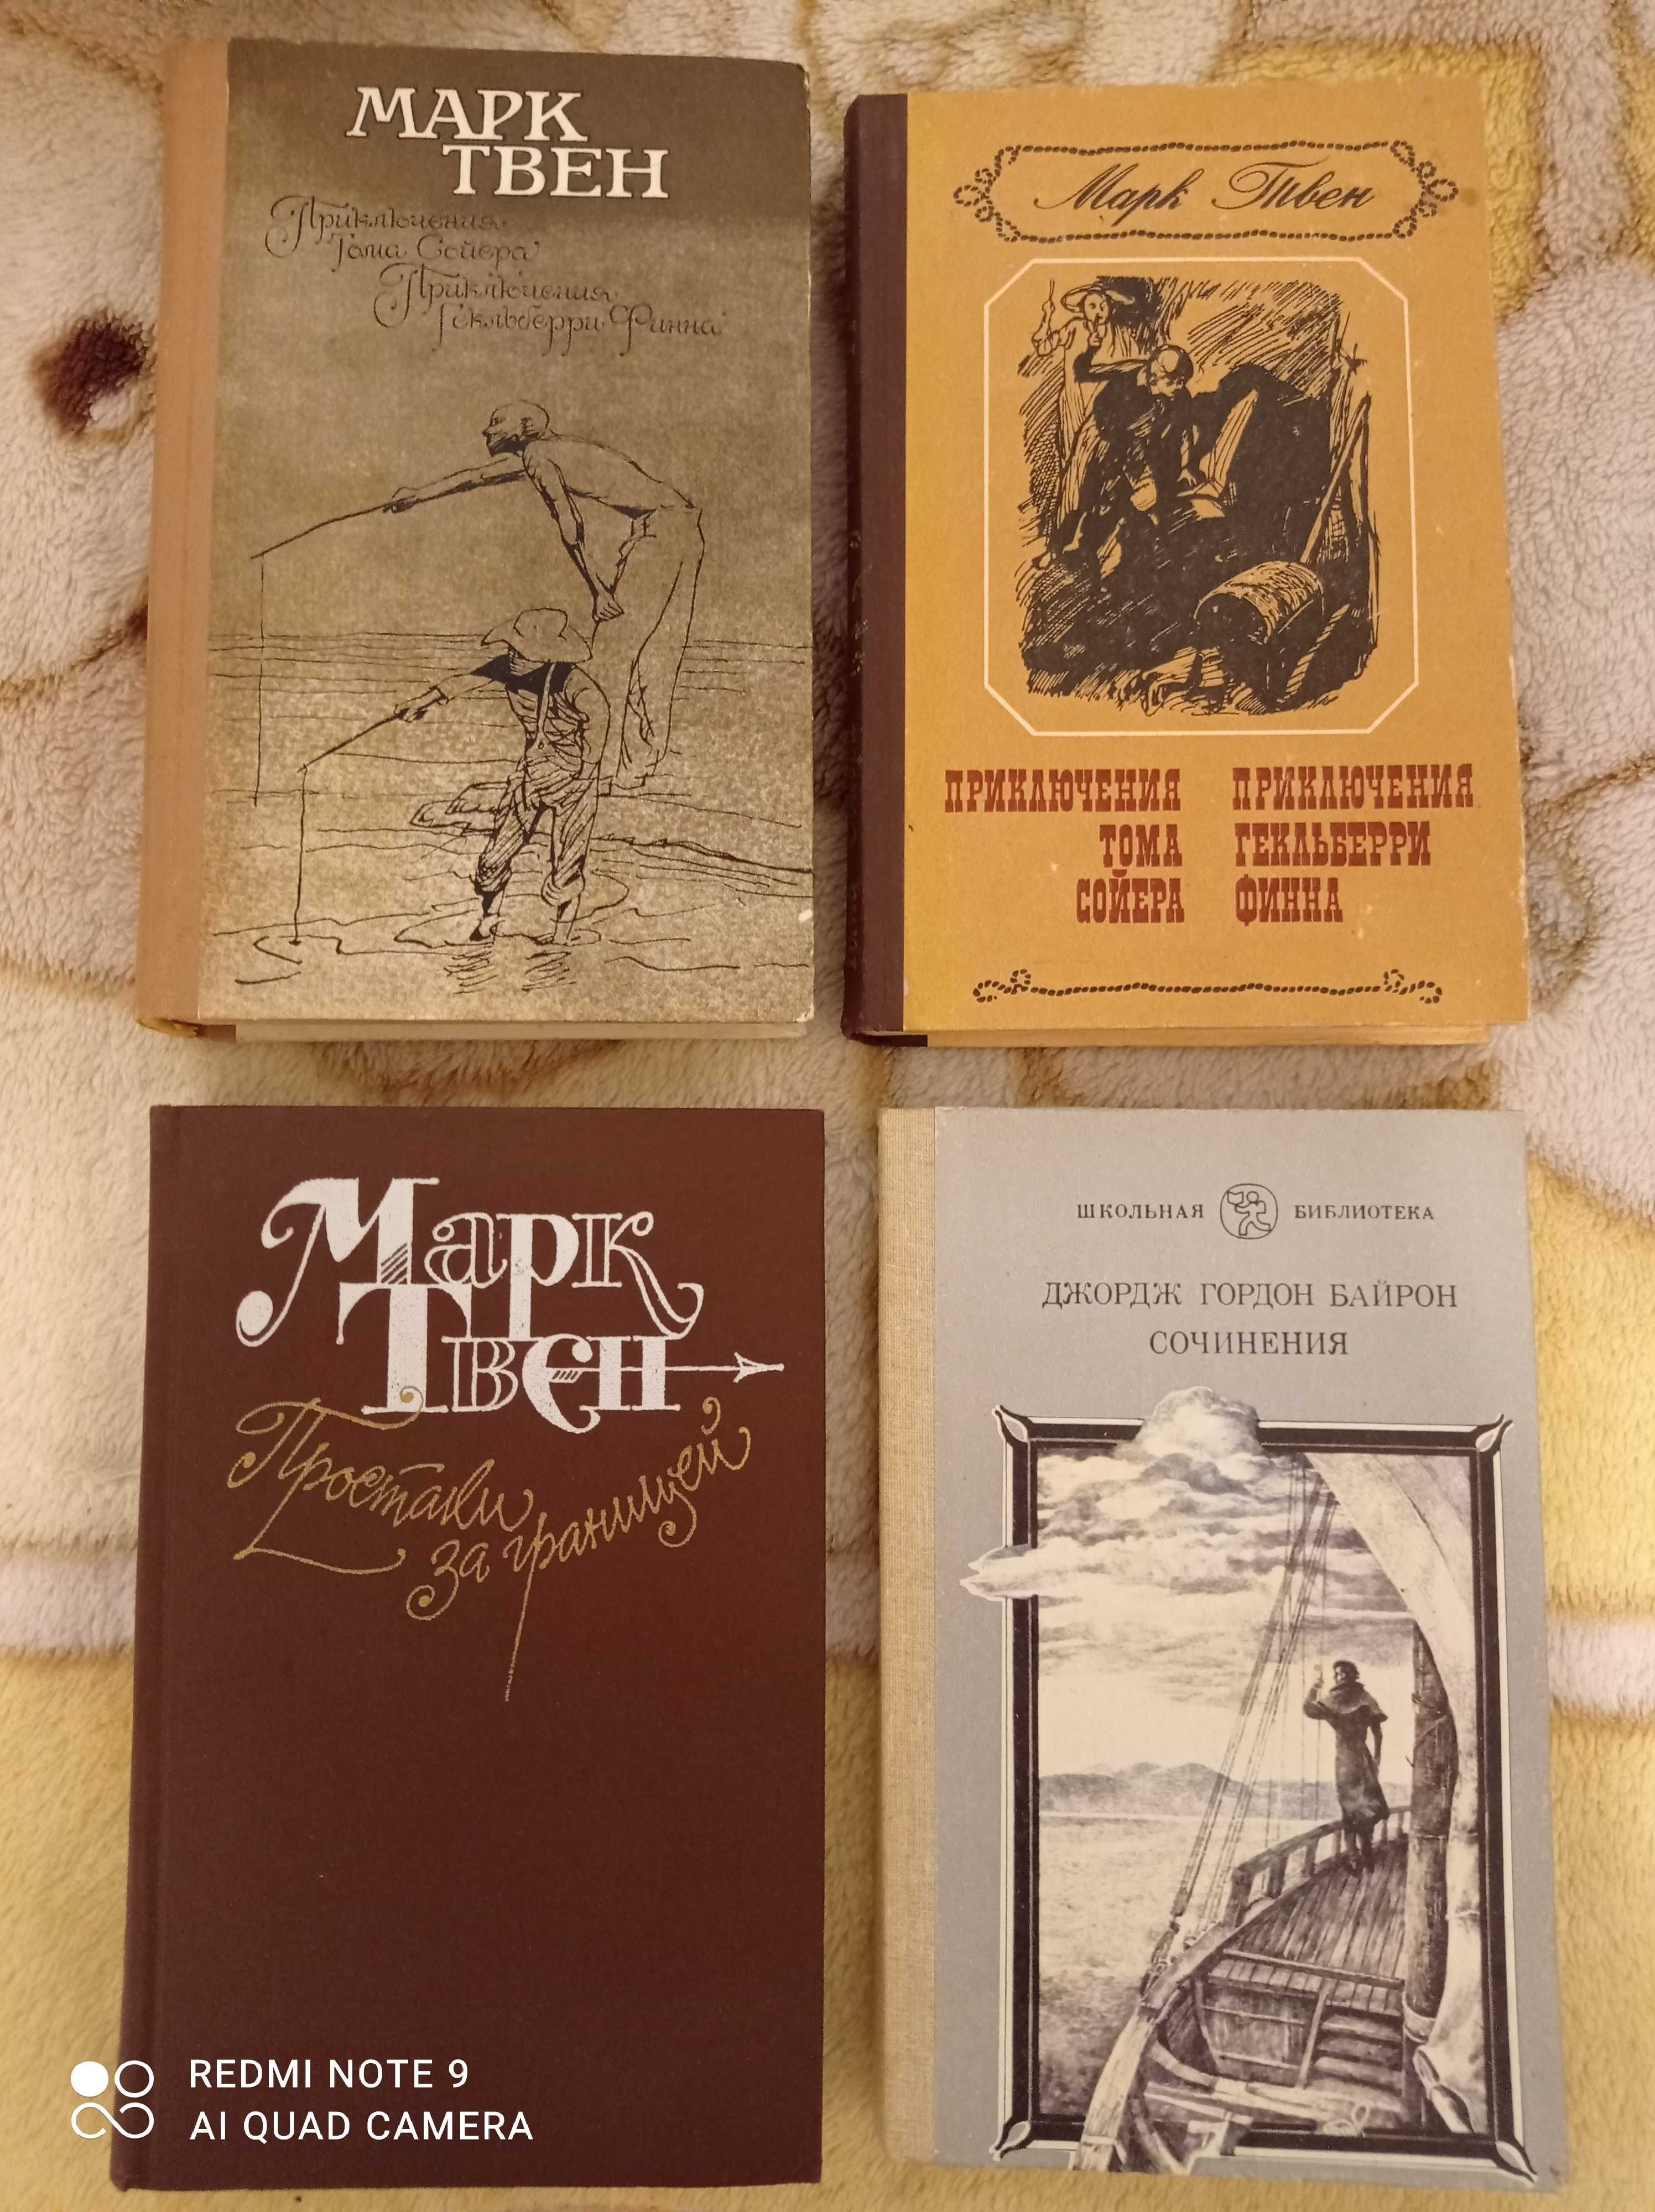 32 книги - Бальзак, Дюма, Достоевский, Куприн, Бунин, По, Мопассан...